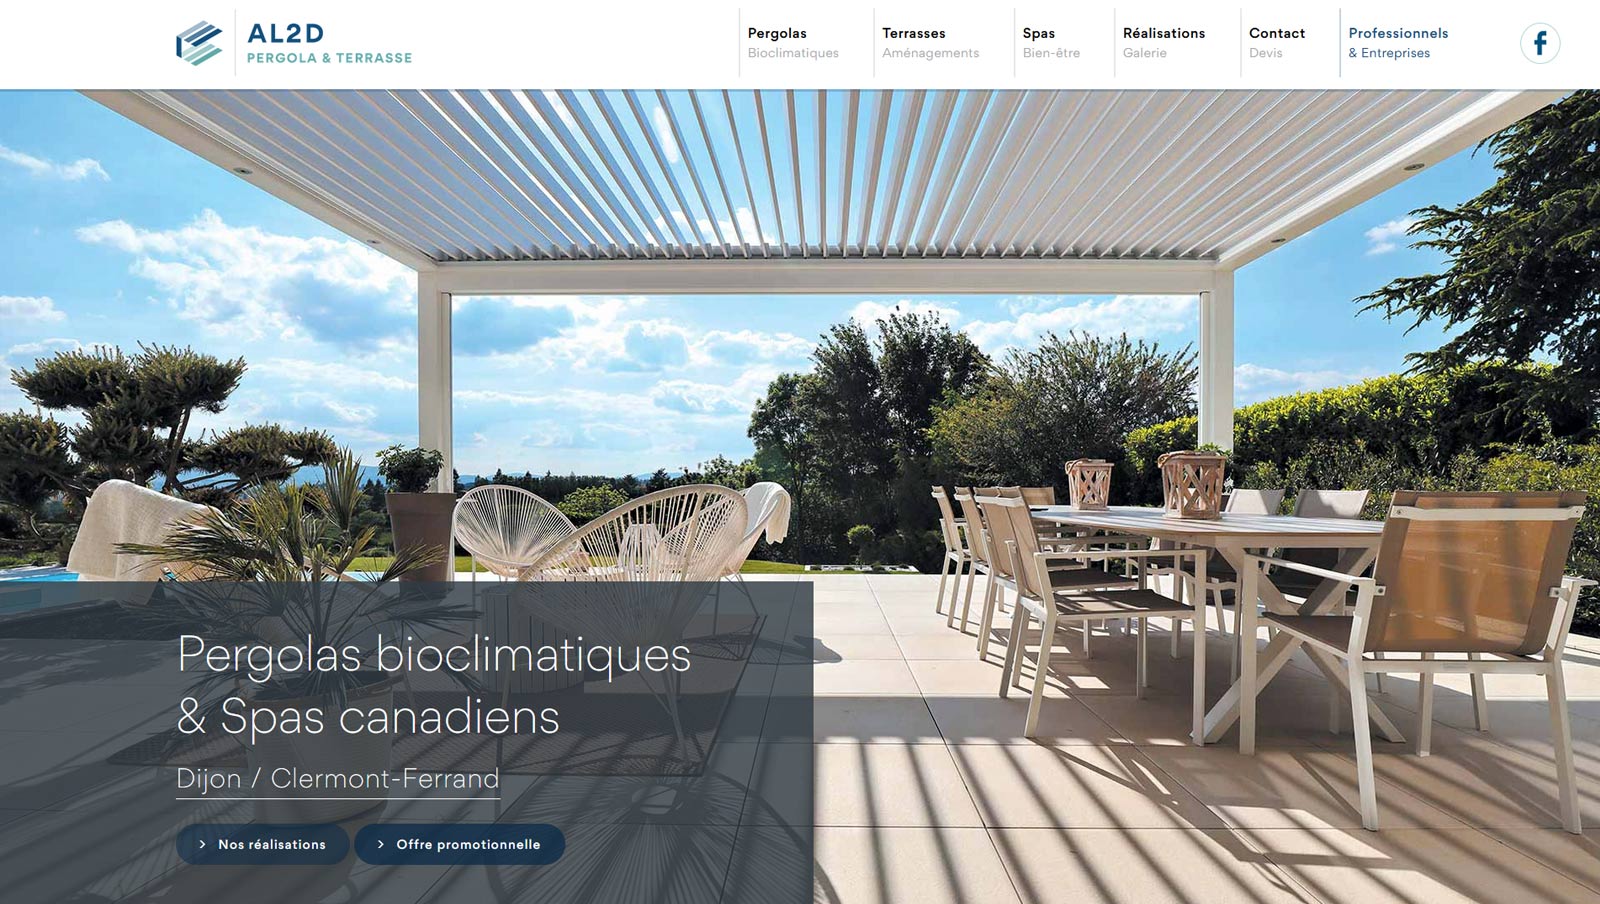 Création site internet vitrine : webdesign et développement pour AL2D Pergola et Terrasse, pergola bioclimatique Dijon / Clermont par Hervé Augoyat